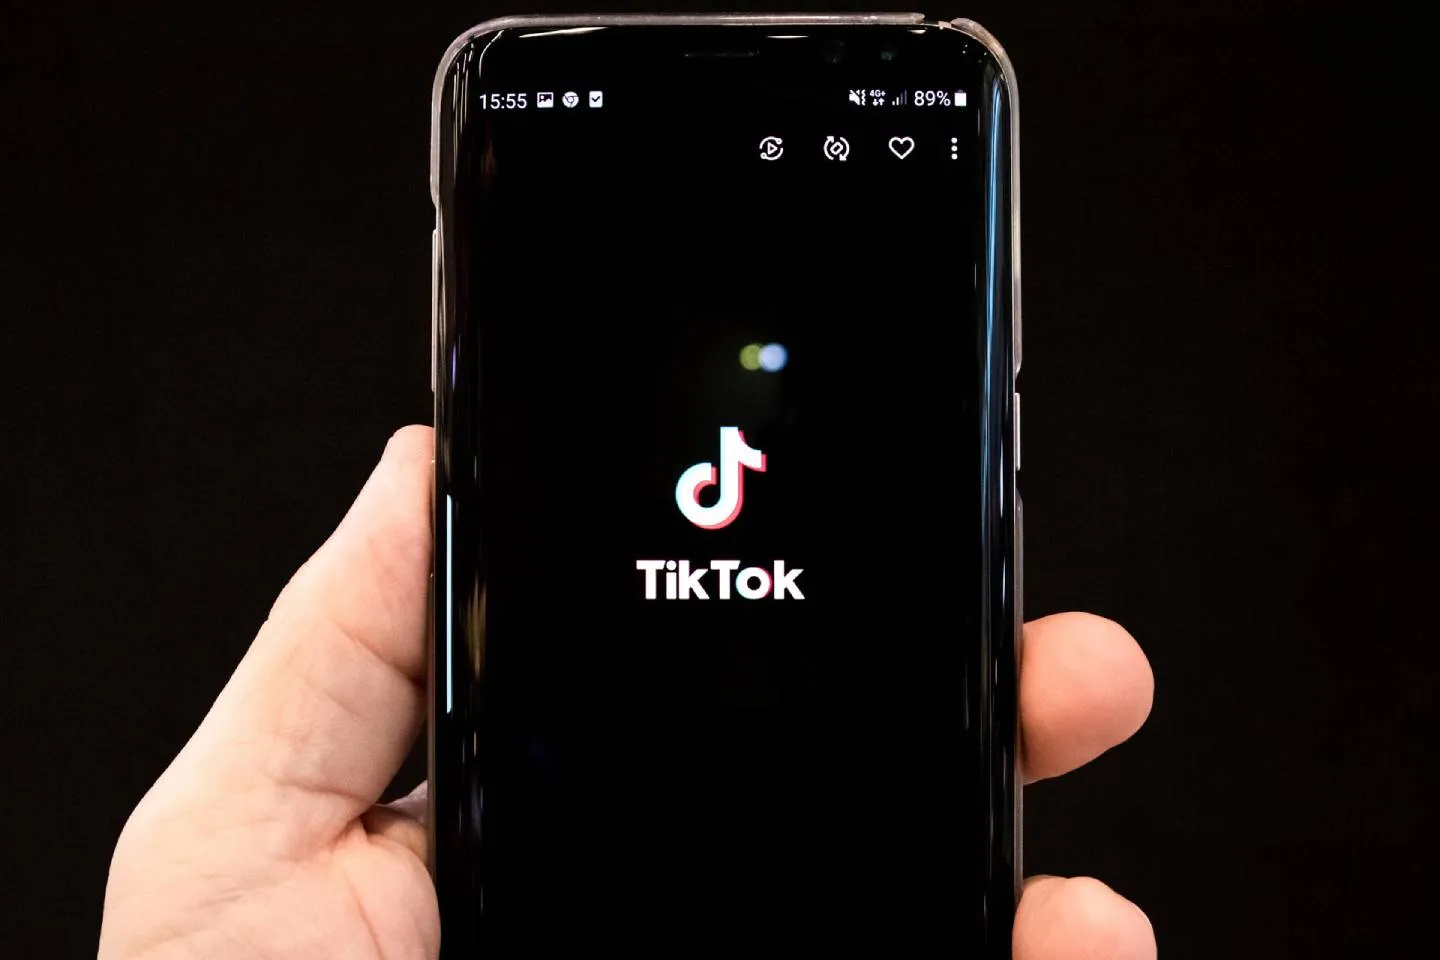 Новости мира / Политика в мире / Правительству Австралии запретят использовать TikTok на служебных устройствах